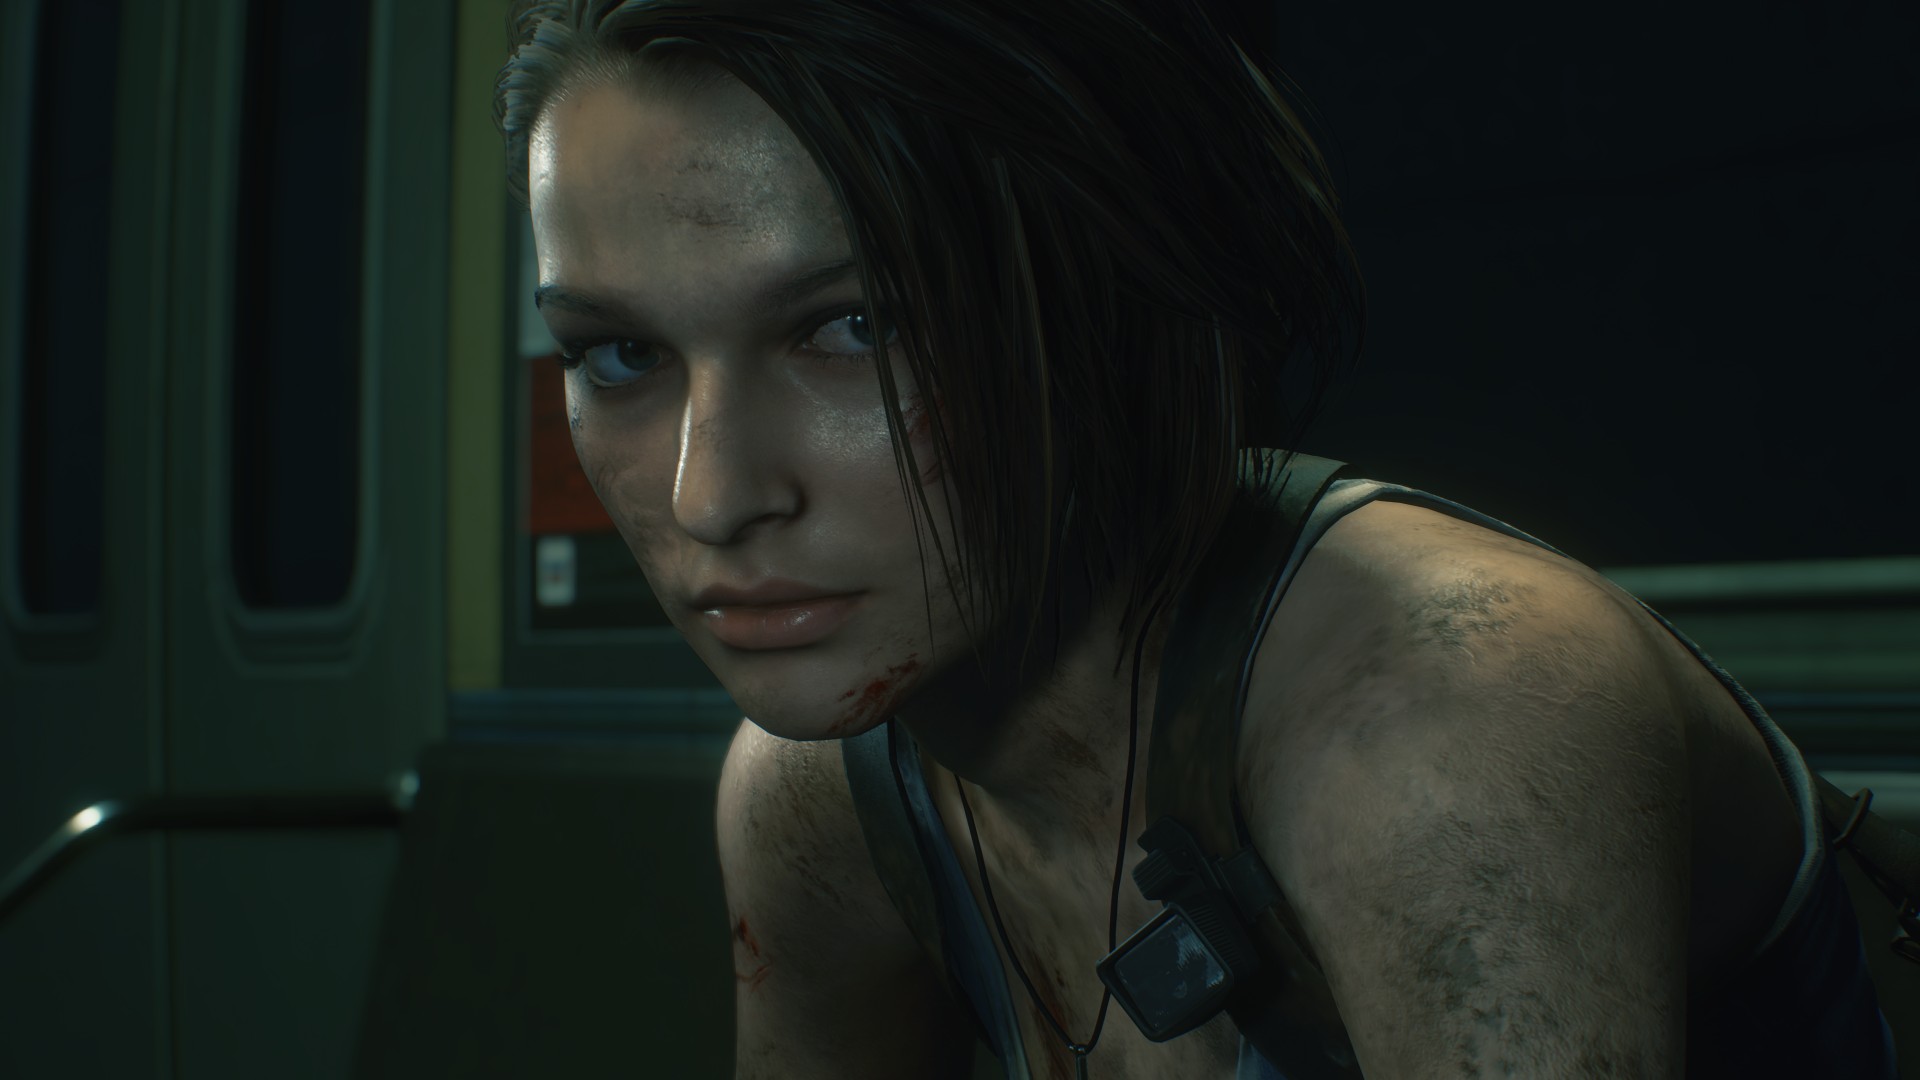  Capcom questionne sa communauté sur l’avenir de Resident Evil, notamment pour la prochaine génération